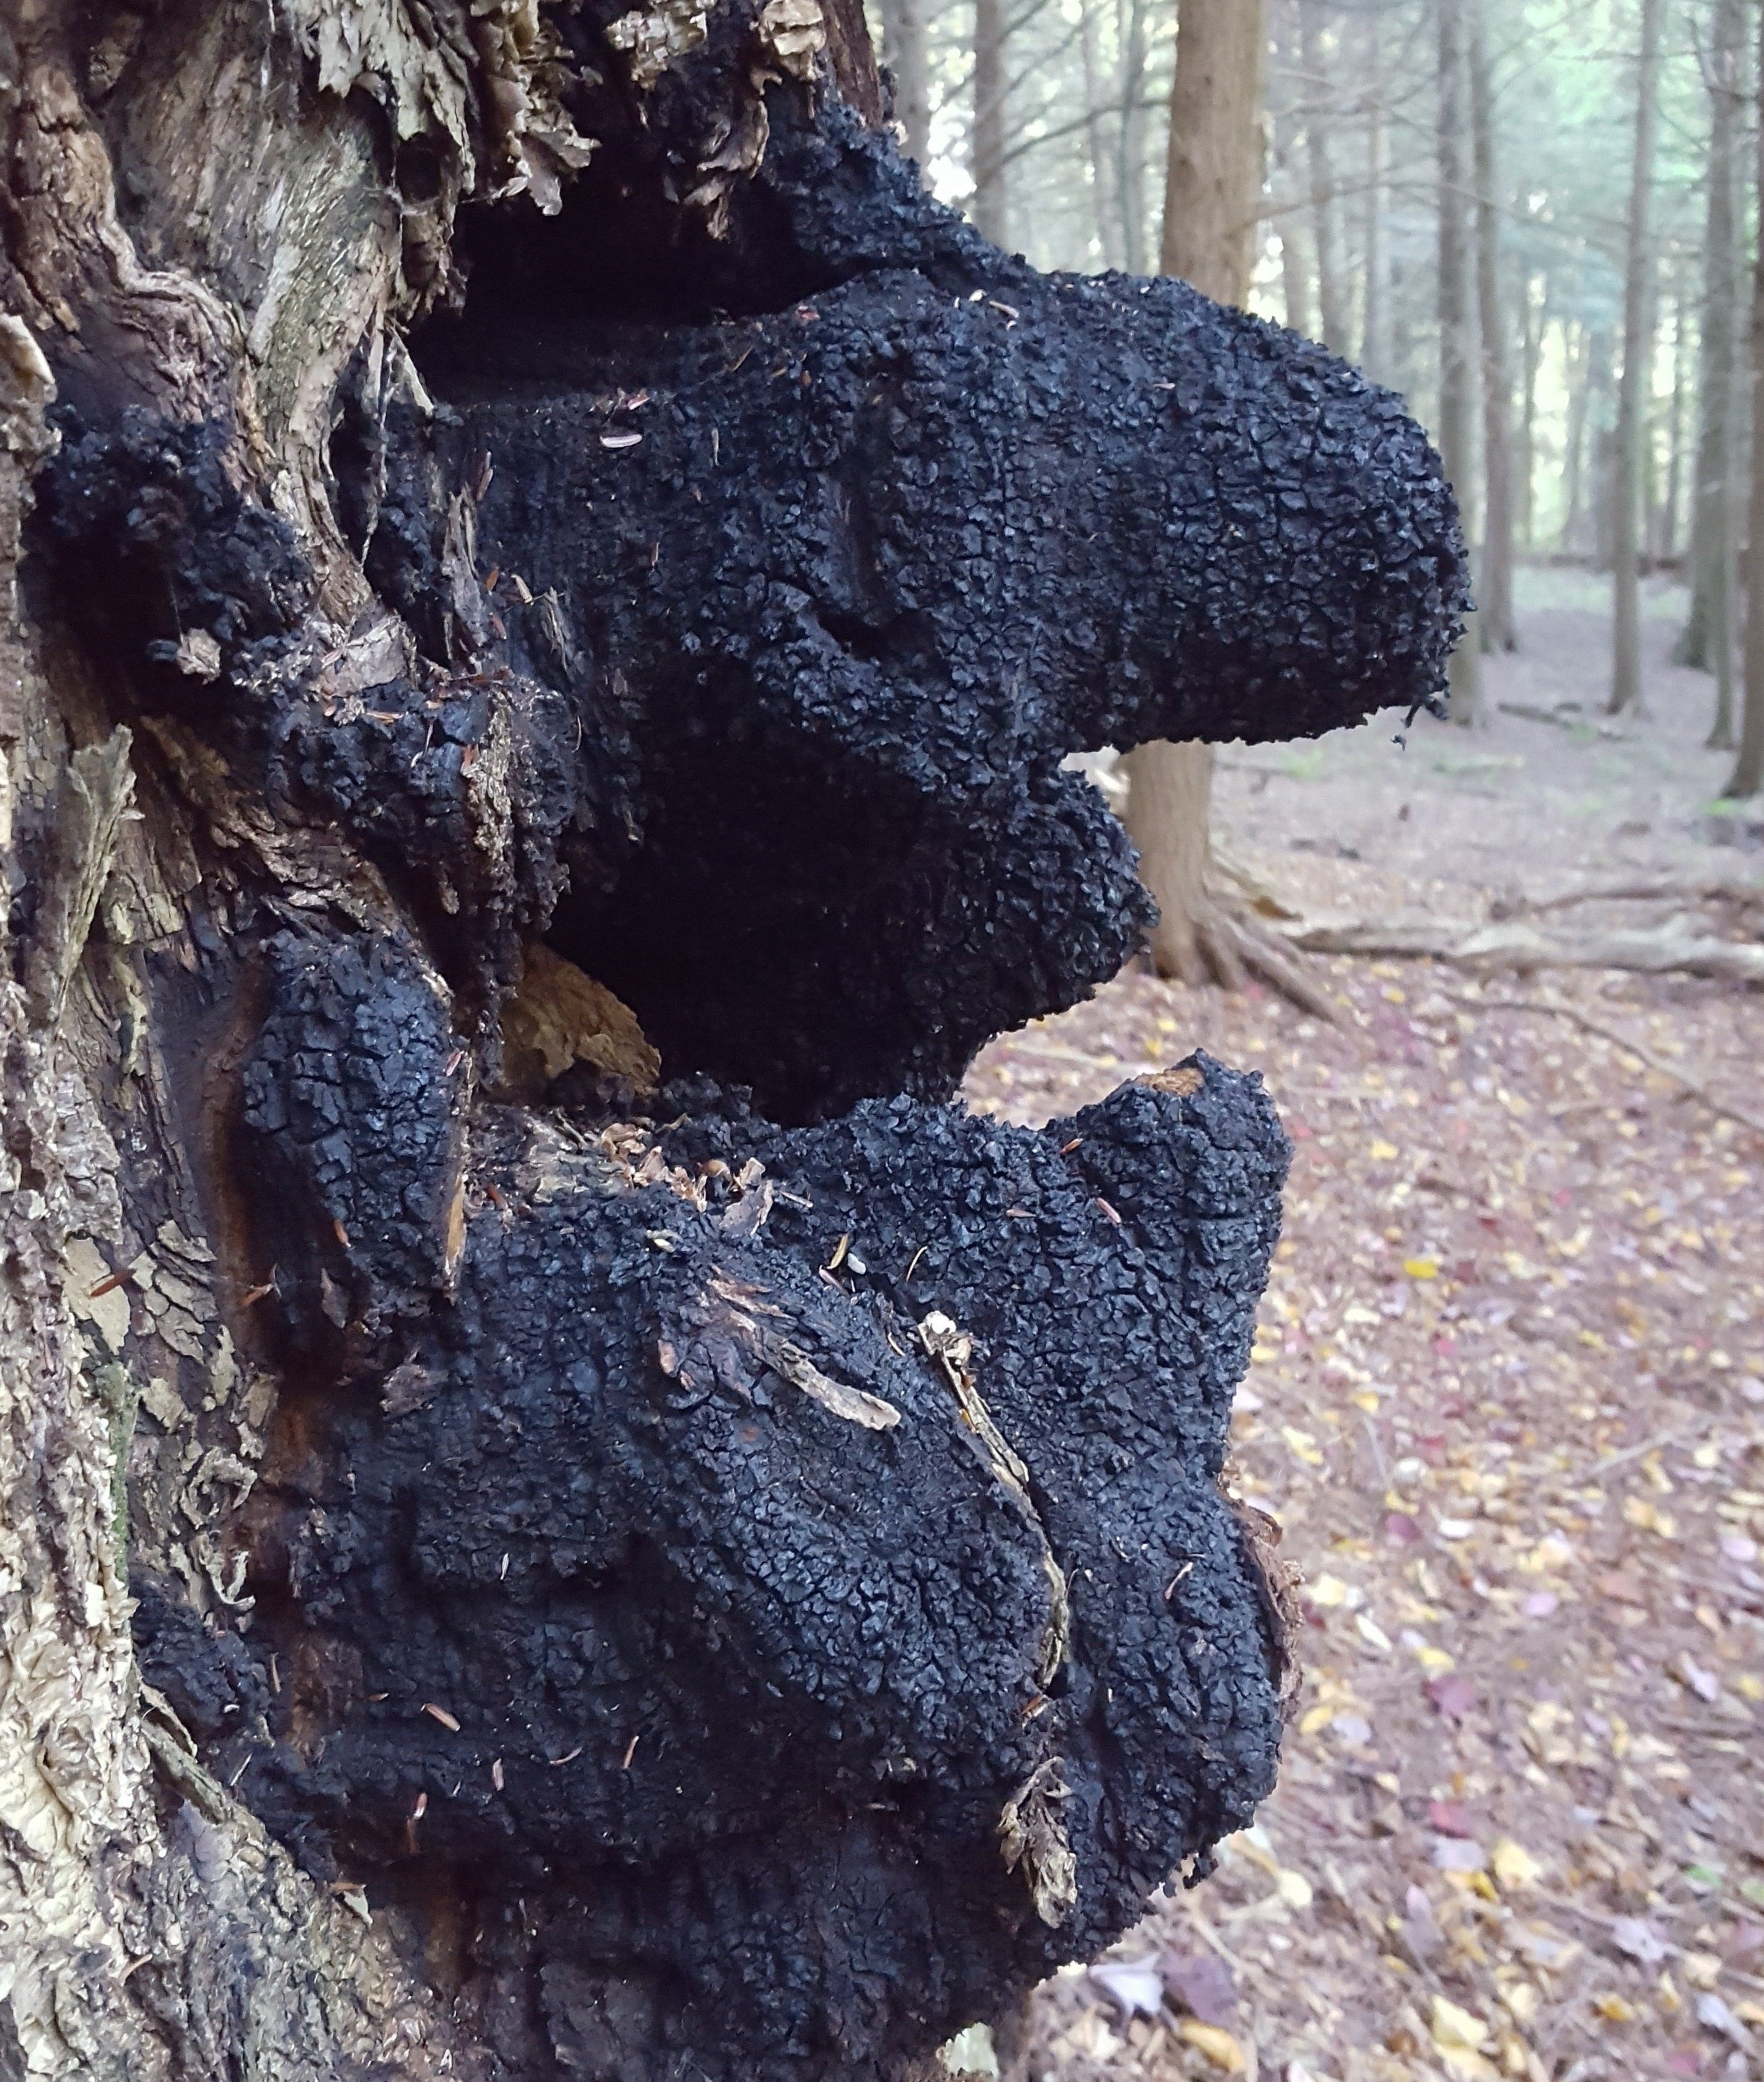 Chaga Inonotus obliquus on birch in the Catskill Mountains